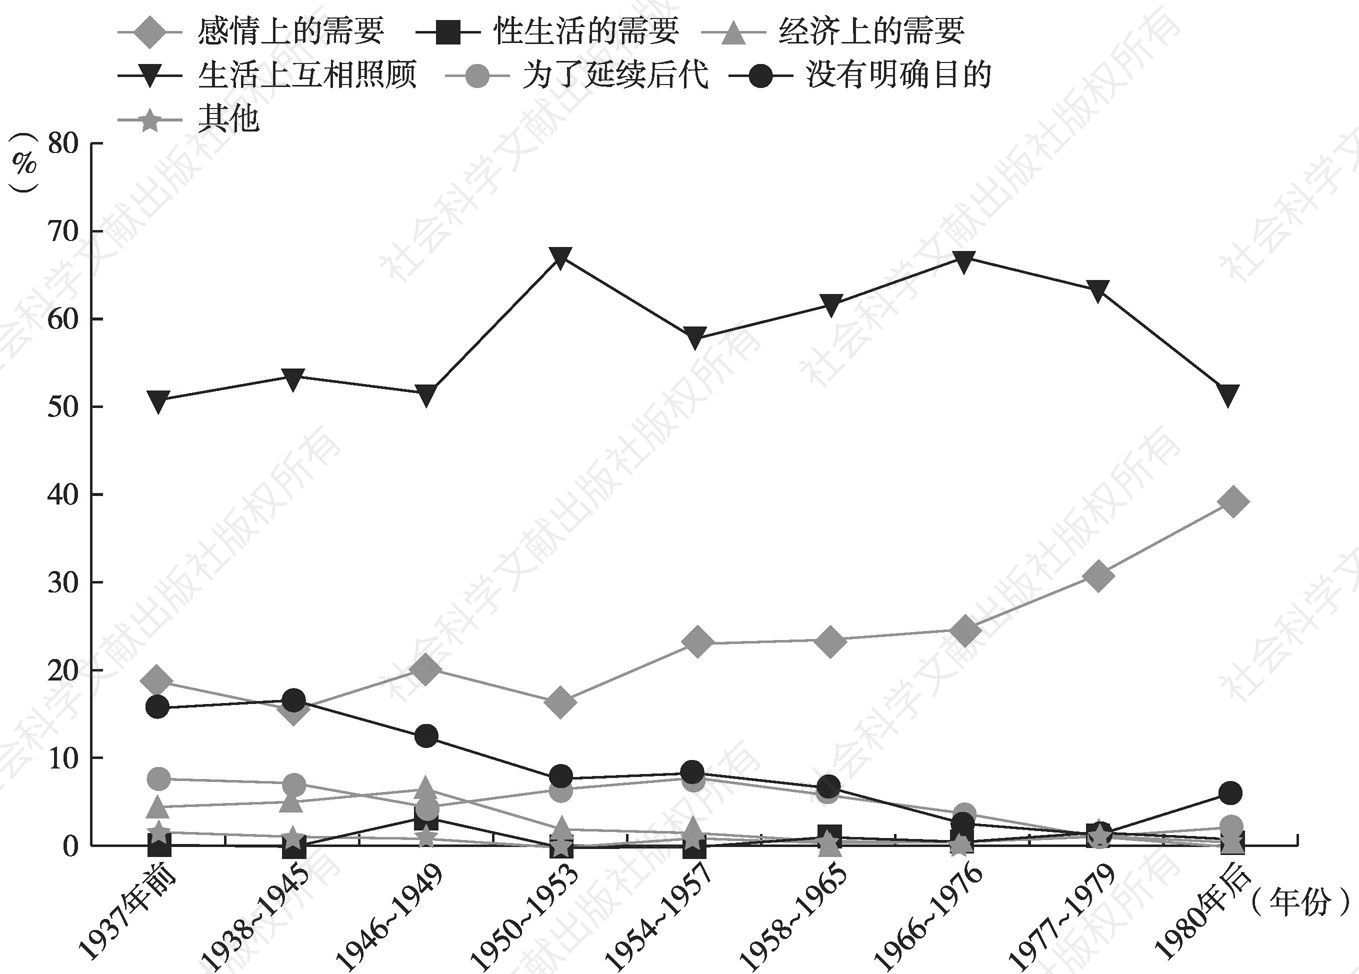 图5-1 婚姻目的与结婚年代交互分类示意图（广州）